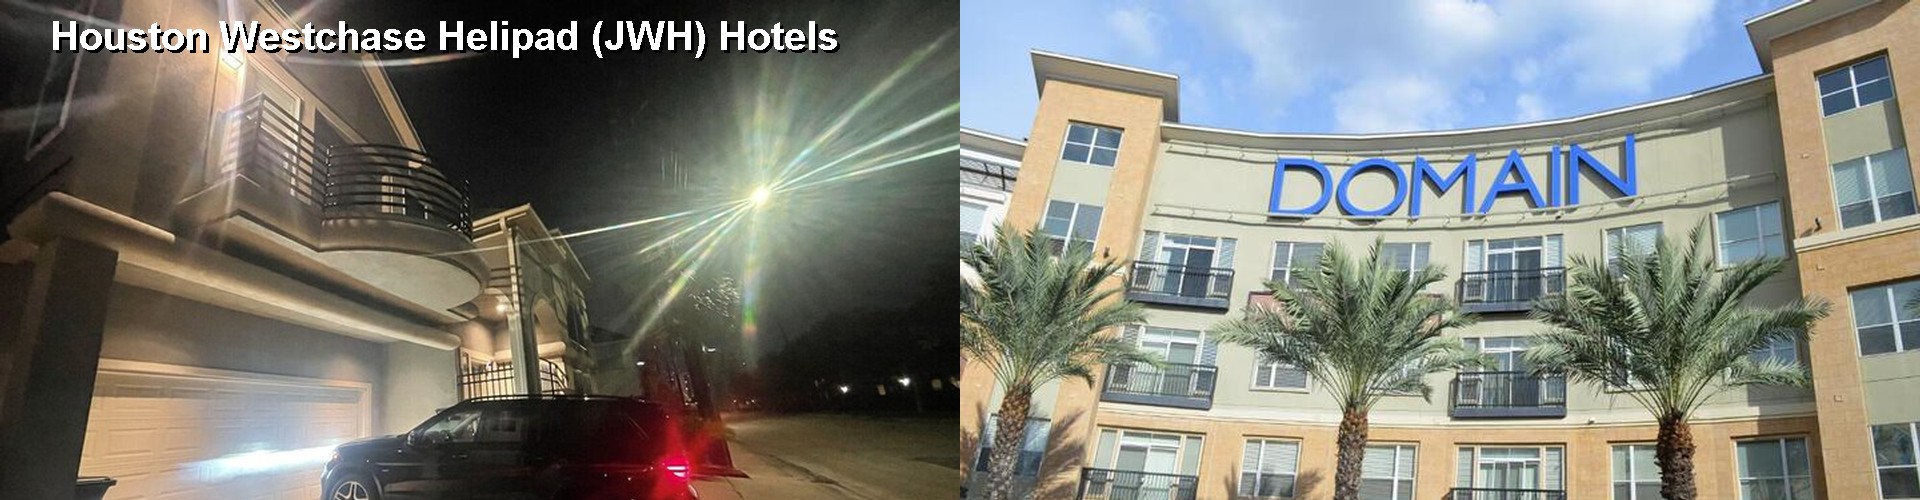 5 Best Hotels near Houston Westchase Helipad (JWH)